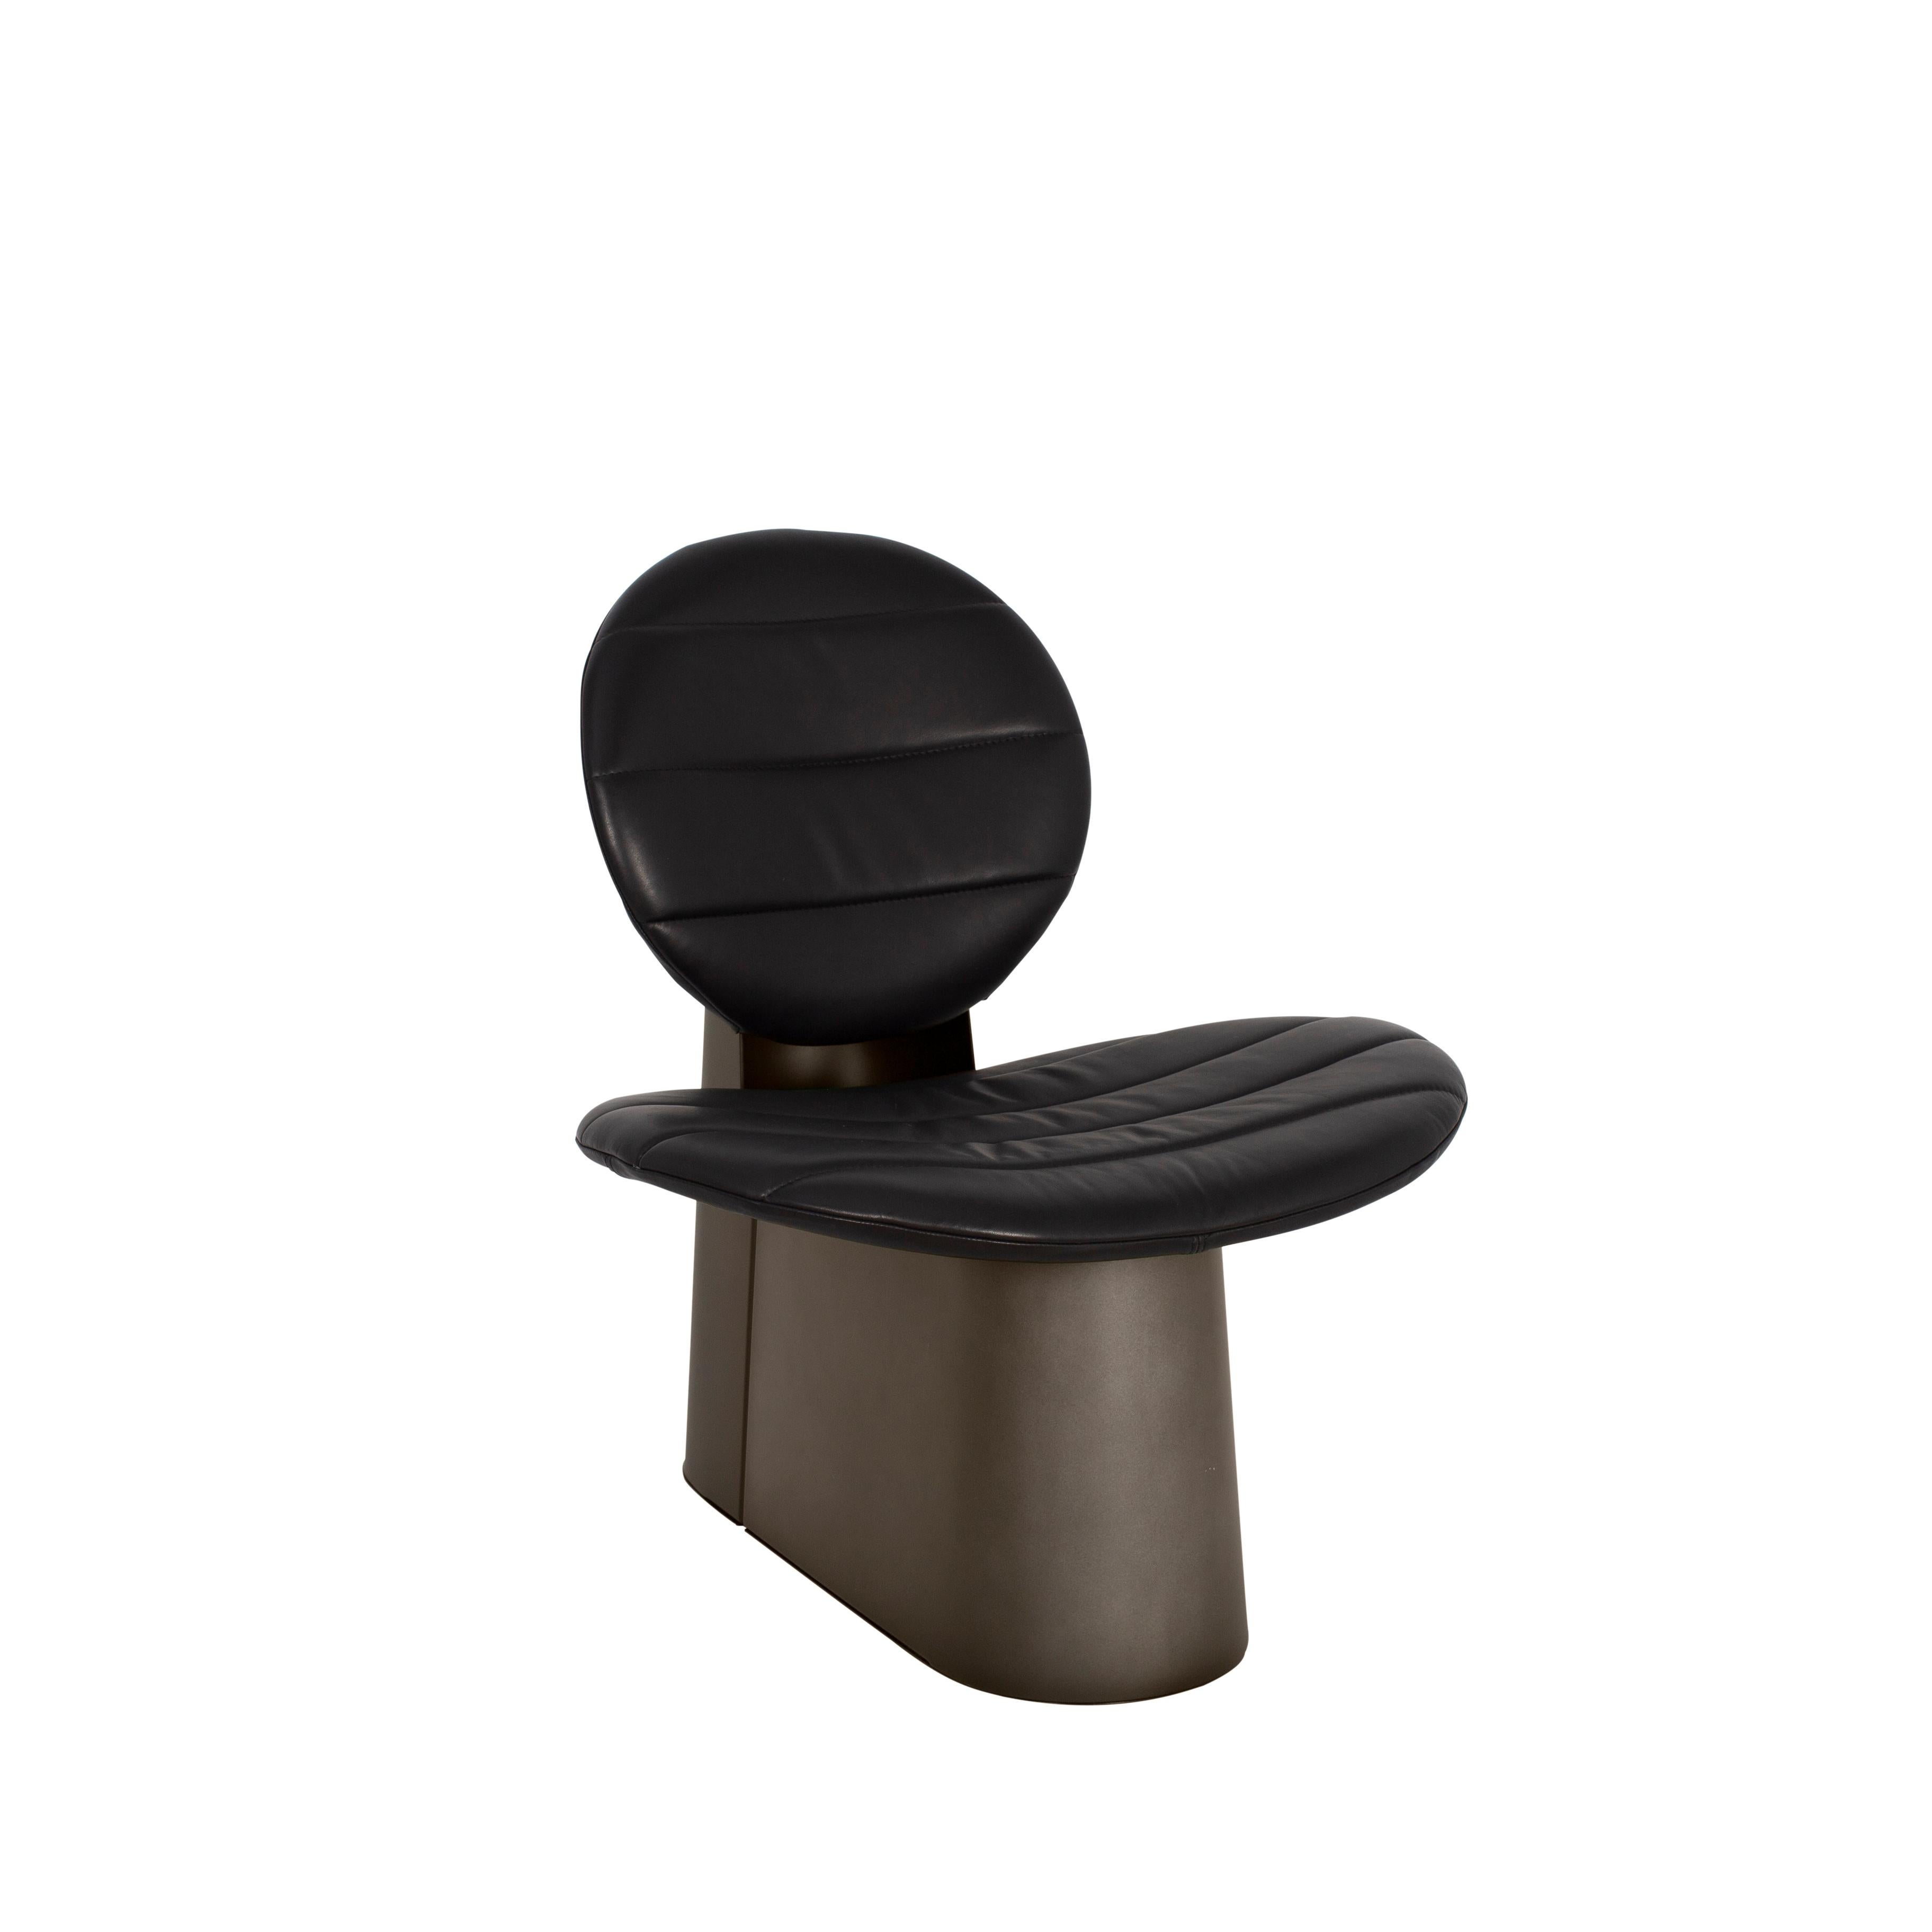 Chaise longue en cuir noir Pilota Smoky Grey de Pulpo
Dimensions : D65 x L75 x H75 cm
MATERIAL : cuir, Corde, fausse fourrure, laine, métal poudré

Également disponible en différentes couleurs et finitions.

En partant d'une construction simple, on